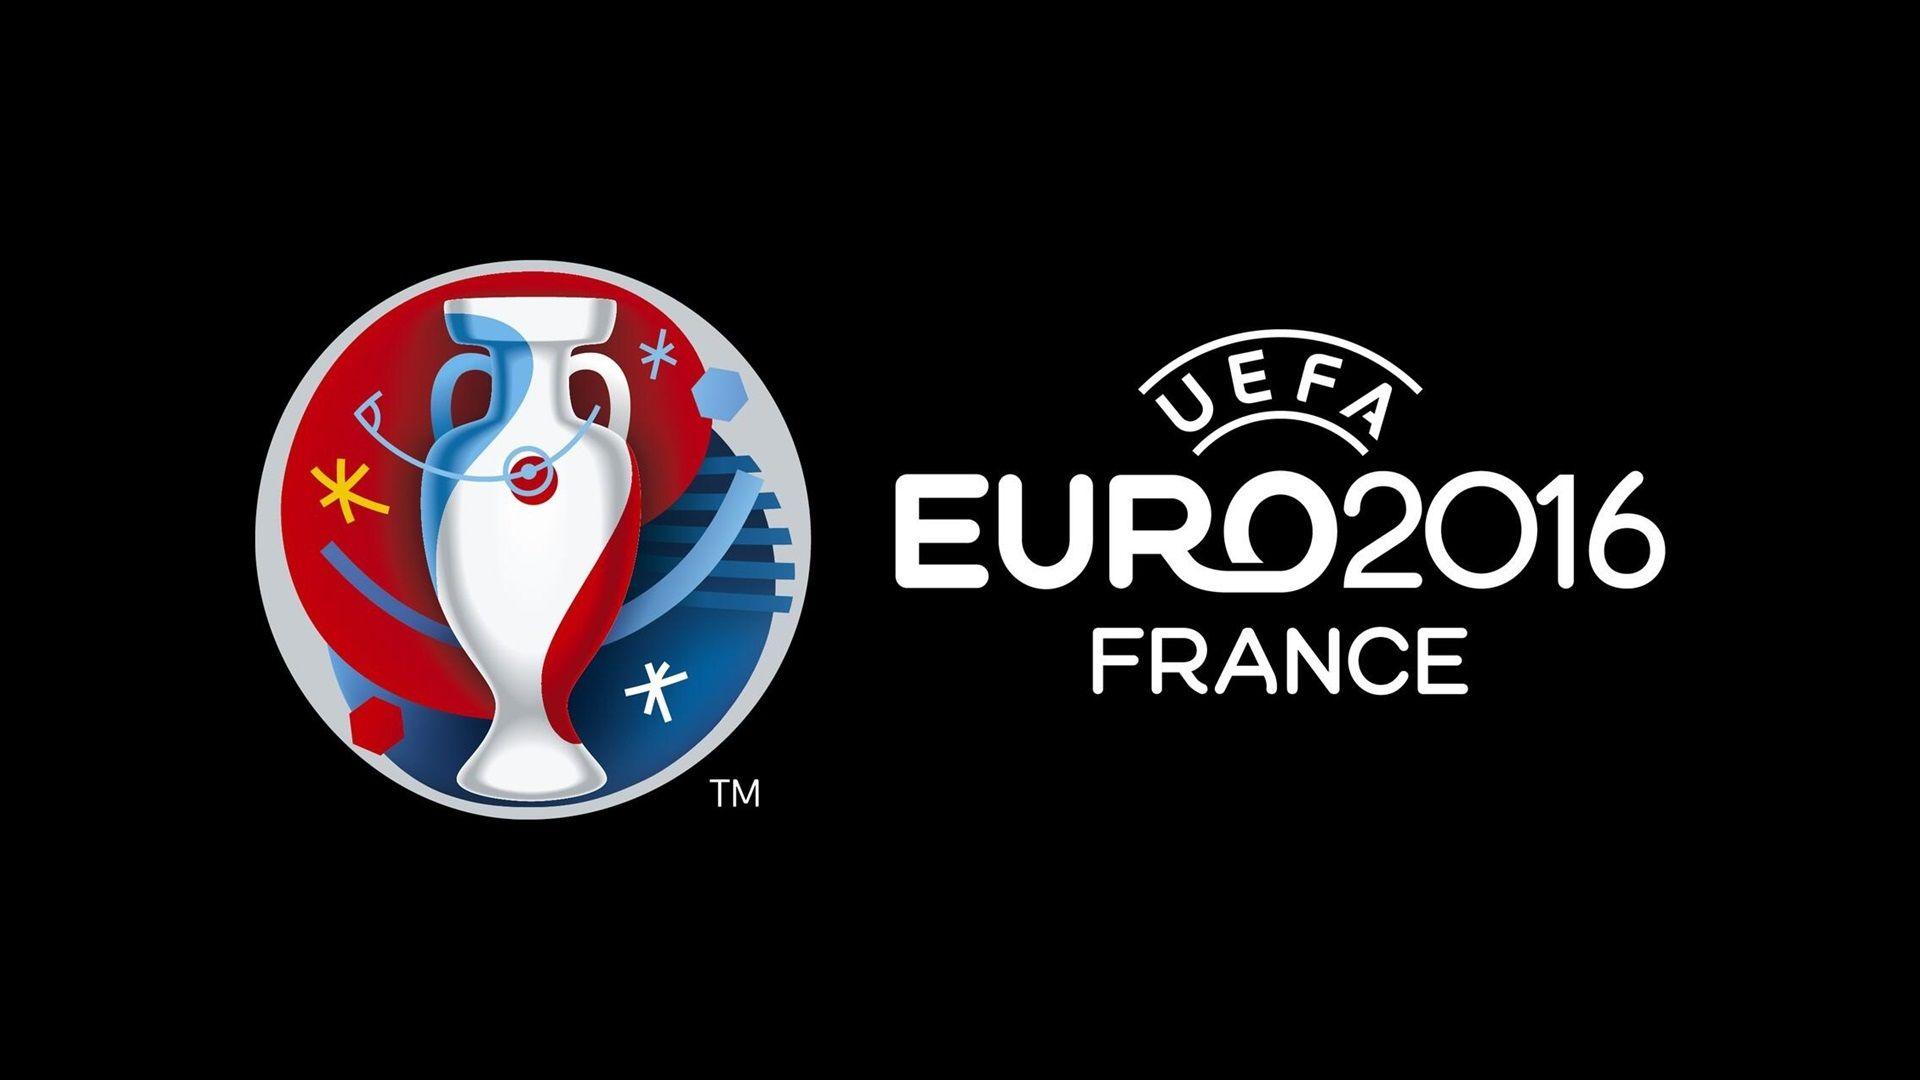 UEFA EURO 2016 France logo, black background wallpaper. other